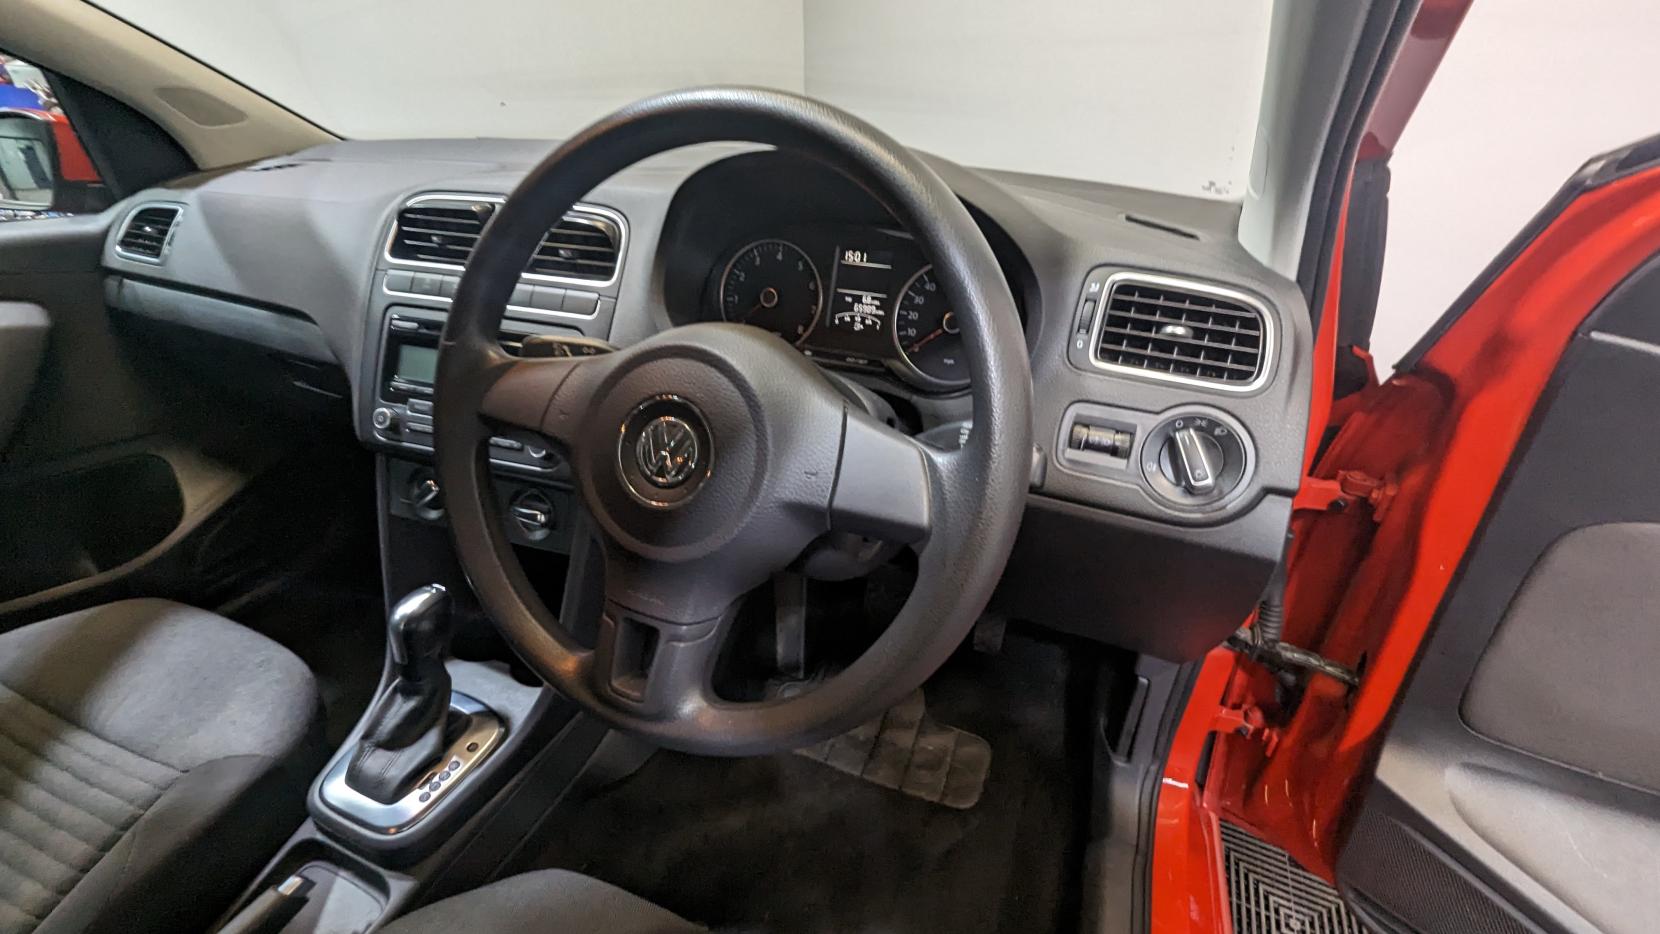 Volkswagen Polo 1.4 SE Hatchback 5dr Petrol DSG Euro 5 (85 ps)